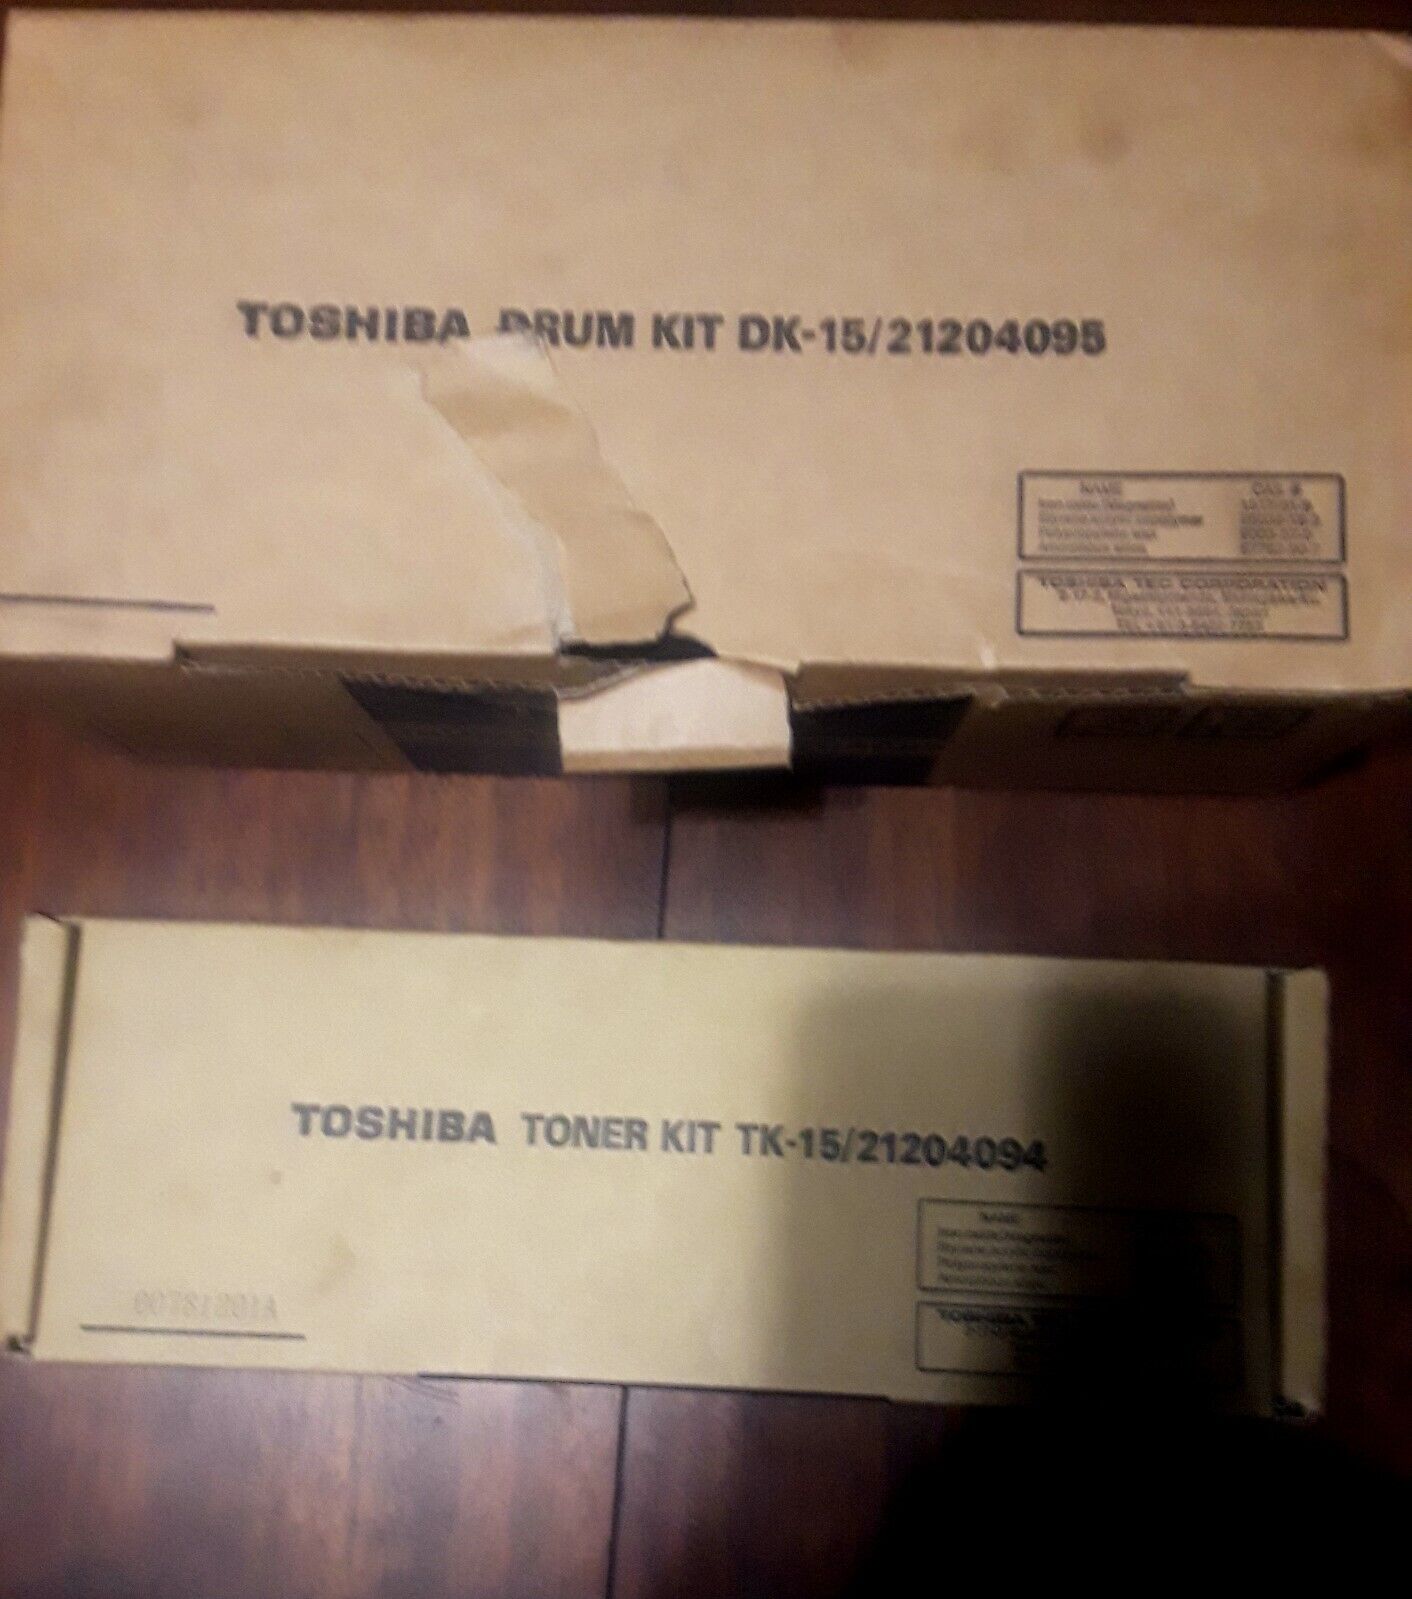 Toshiba Drum Kit DK 15 & Toner Kit TK 15 Lot of 2 Items New Open Box Never Used